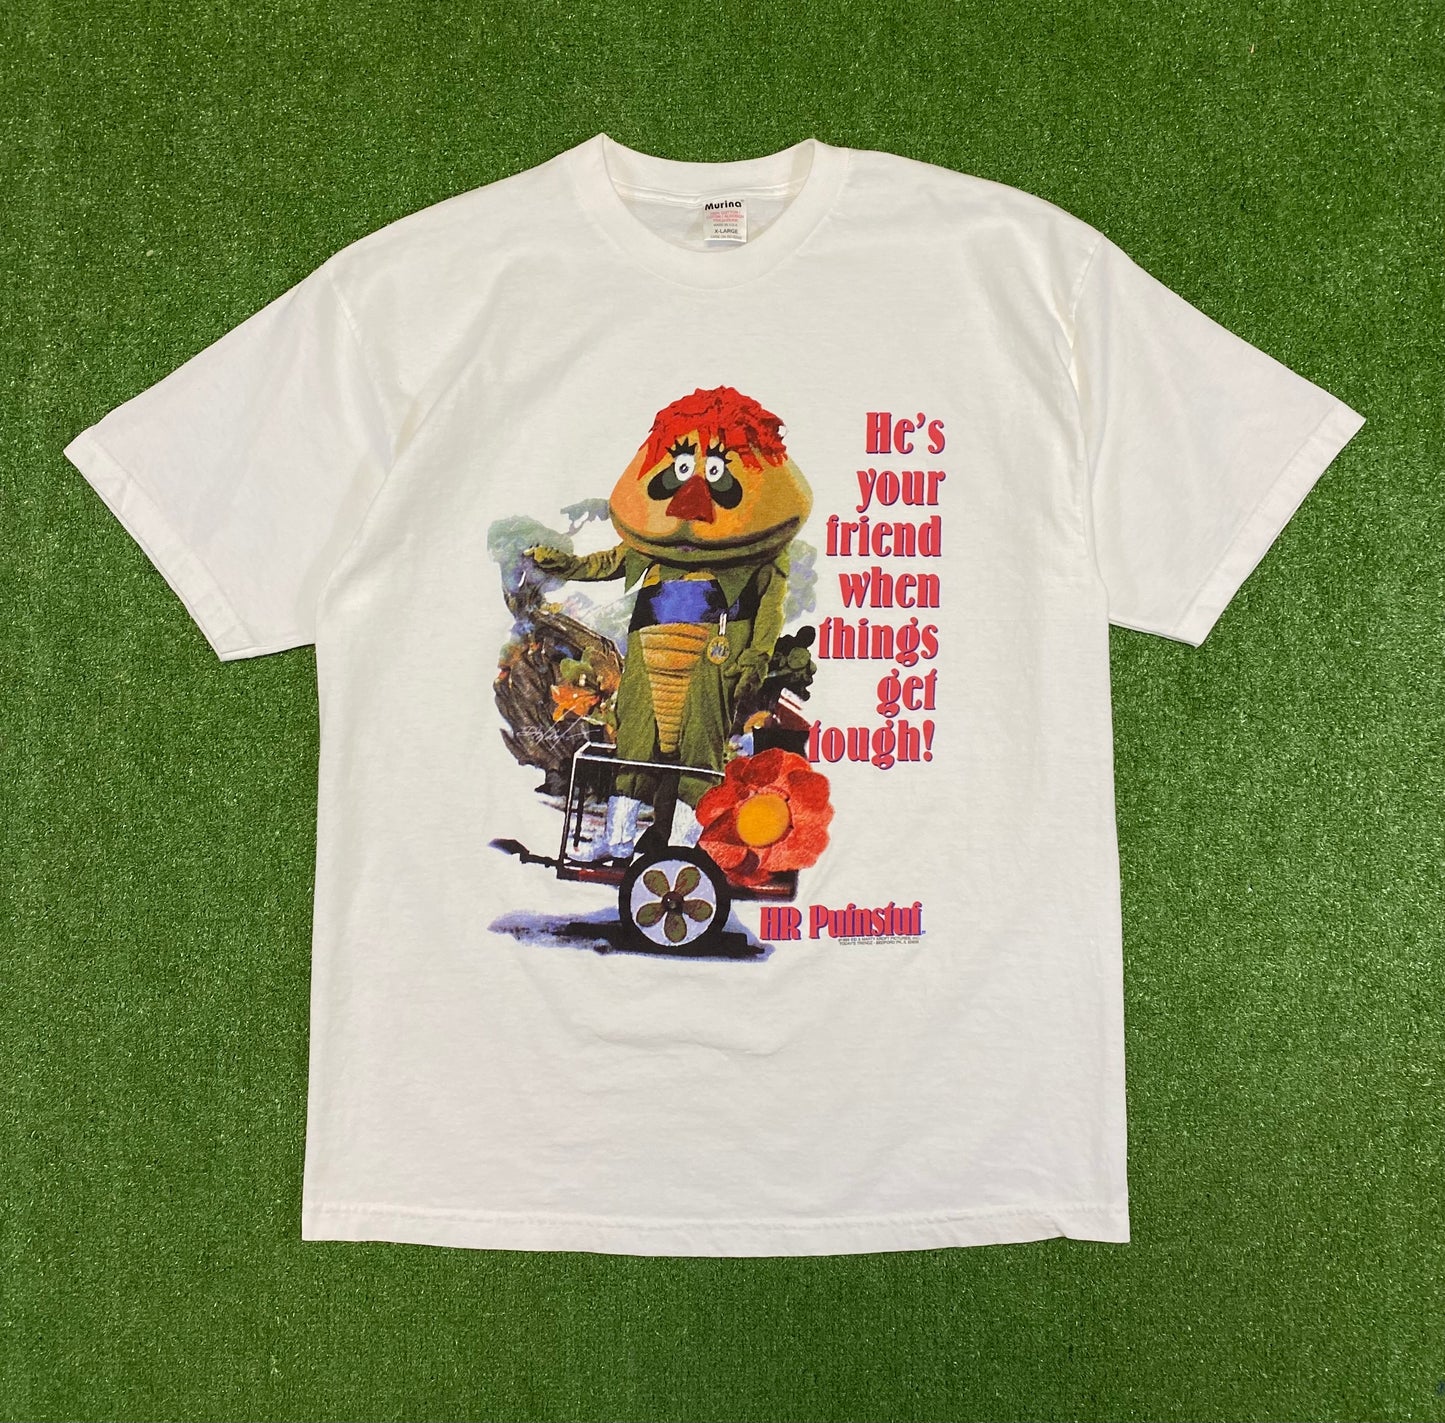 1999 HR Pufnstuf “He’s Your Friend” T-Shirt XL